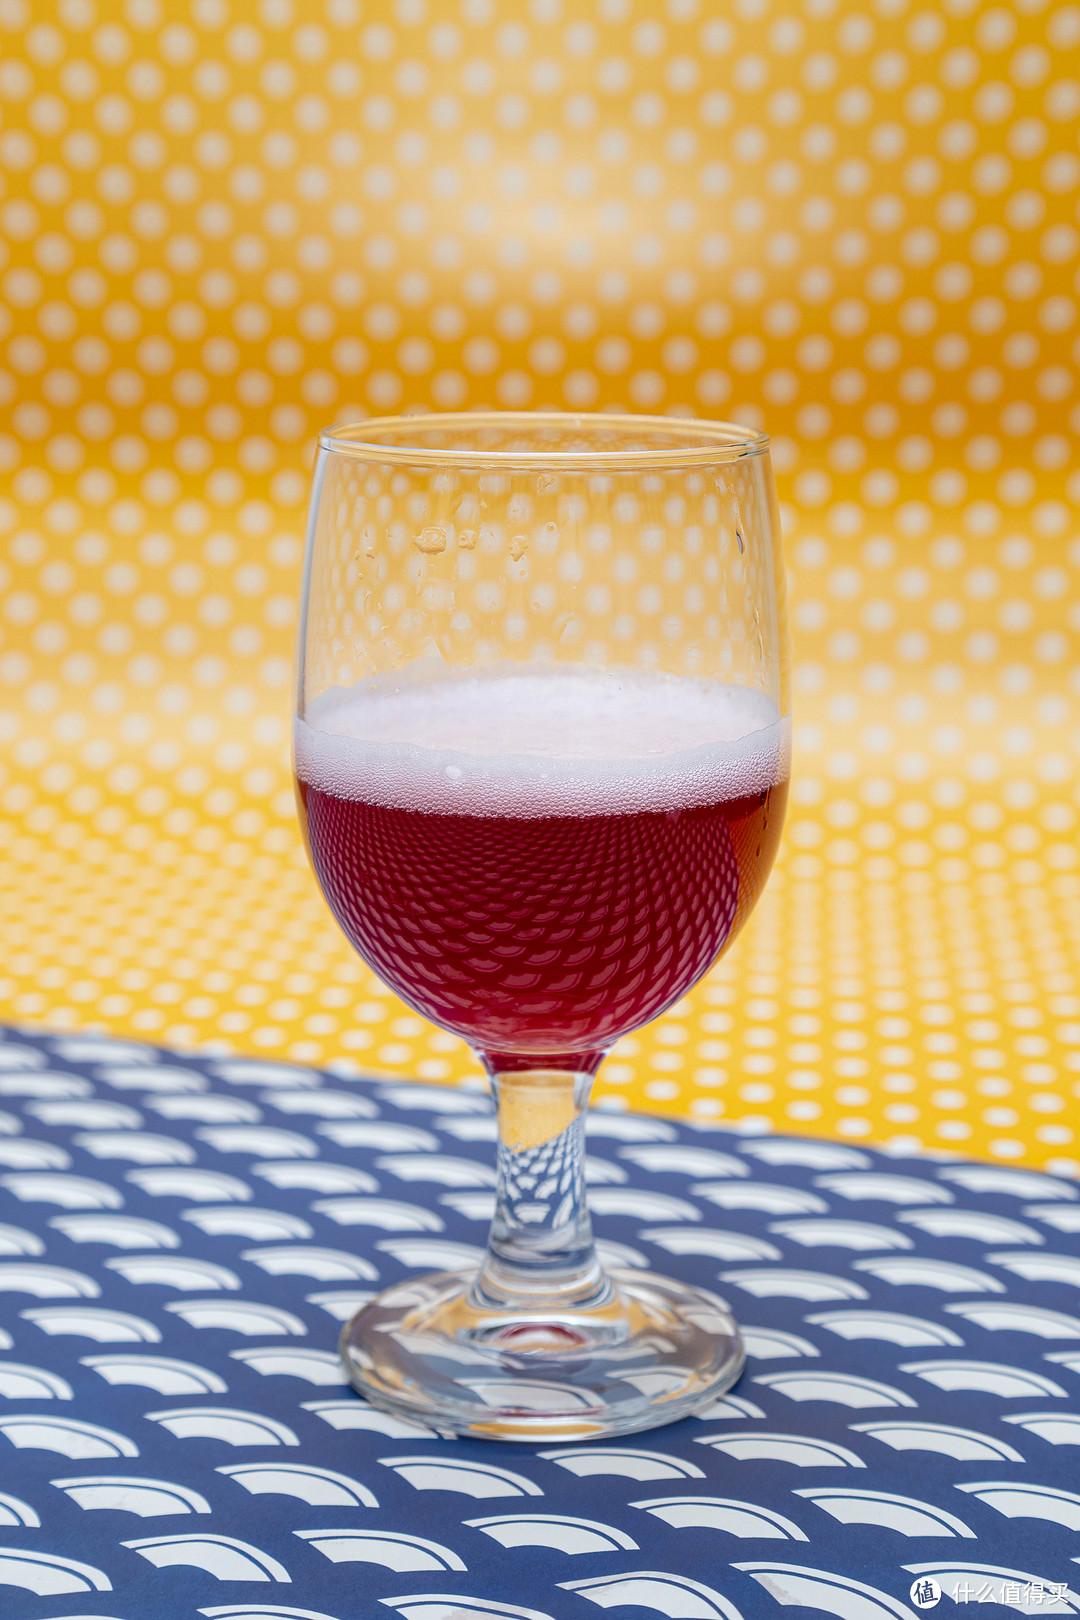 夏日里的一抹醉人的红—千岛湖樱桃啤酒